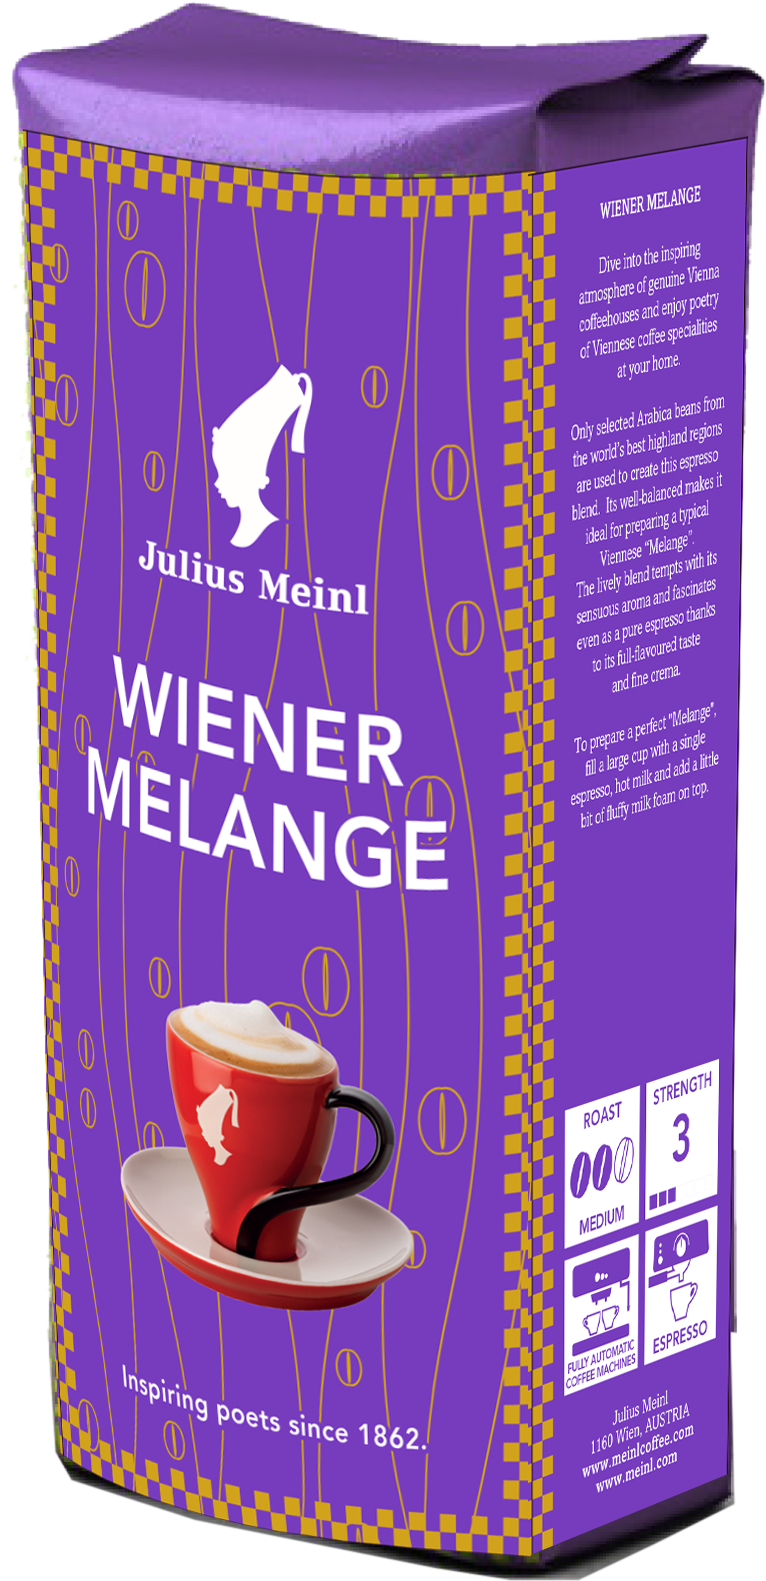 Viennese Melange Julius Meinl. Джулиус Майнл кофе в зернах. Julius Meinl растворимый кофе. Кофе Julius Meinl Espresso. Julius meinl в зернах купить